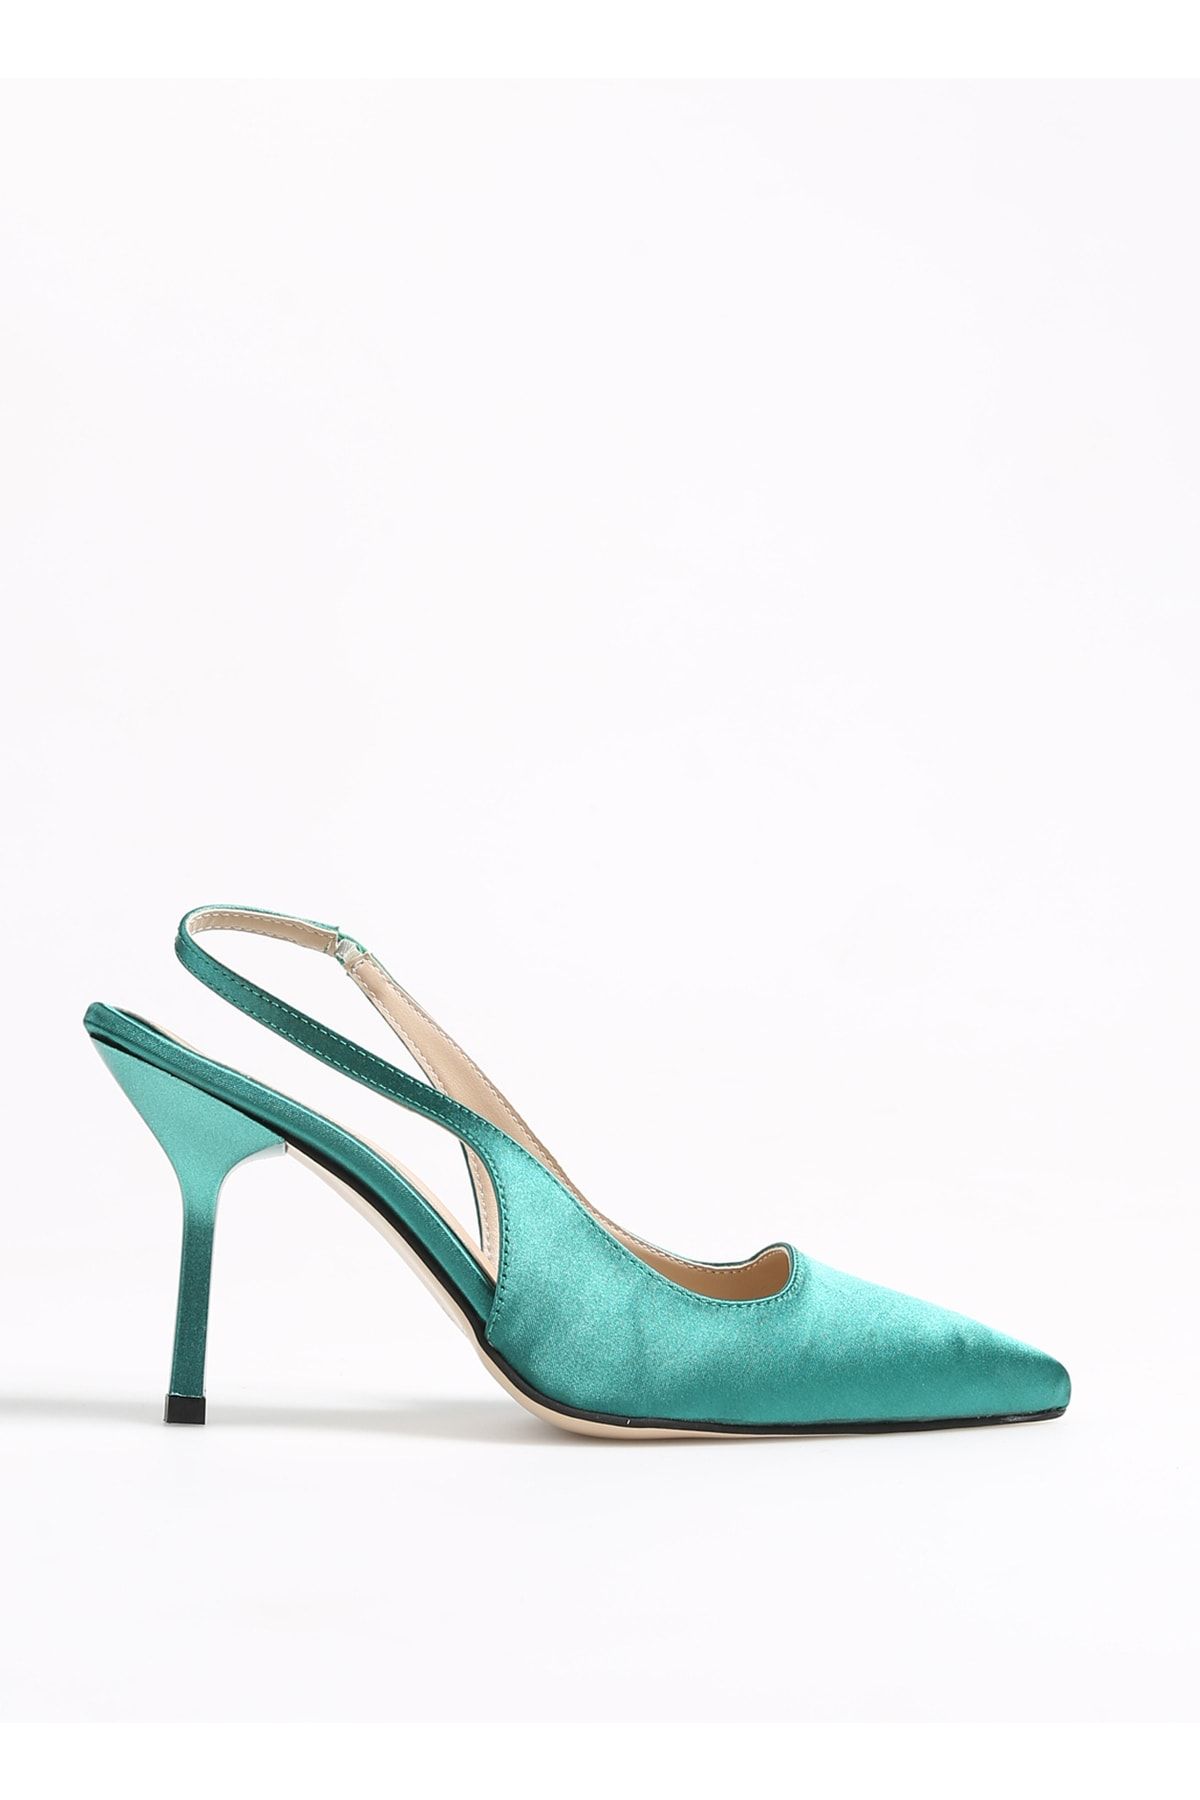 Fabrika Yeşil Kadın Topuklu Ayakkabı Hınes